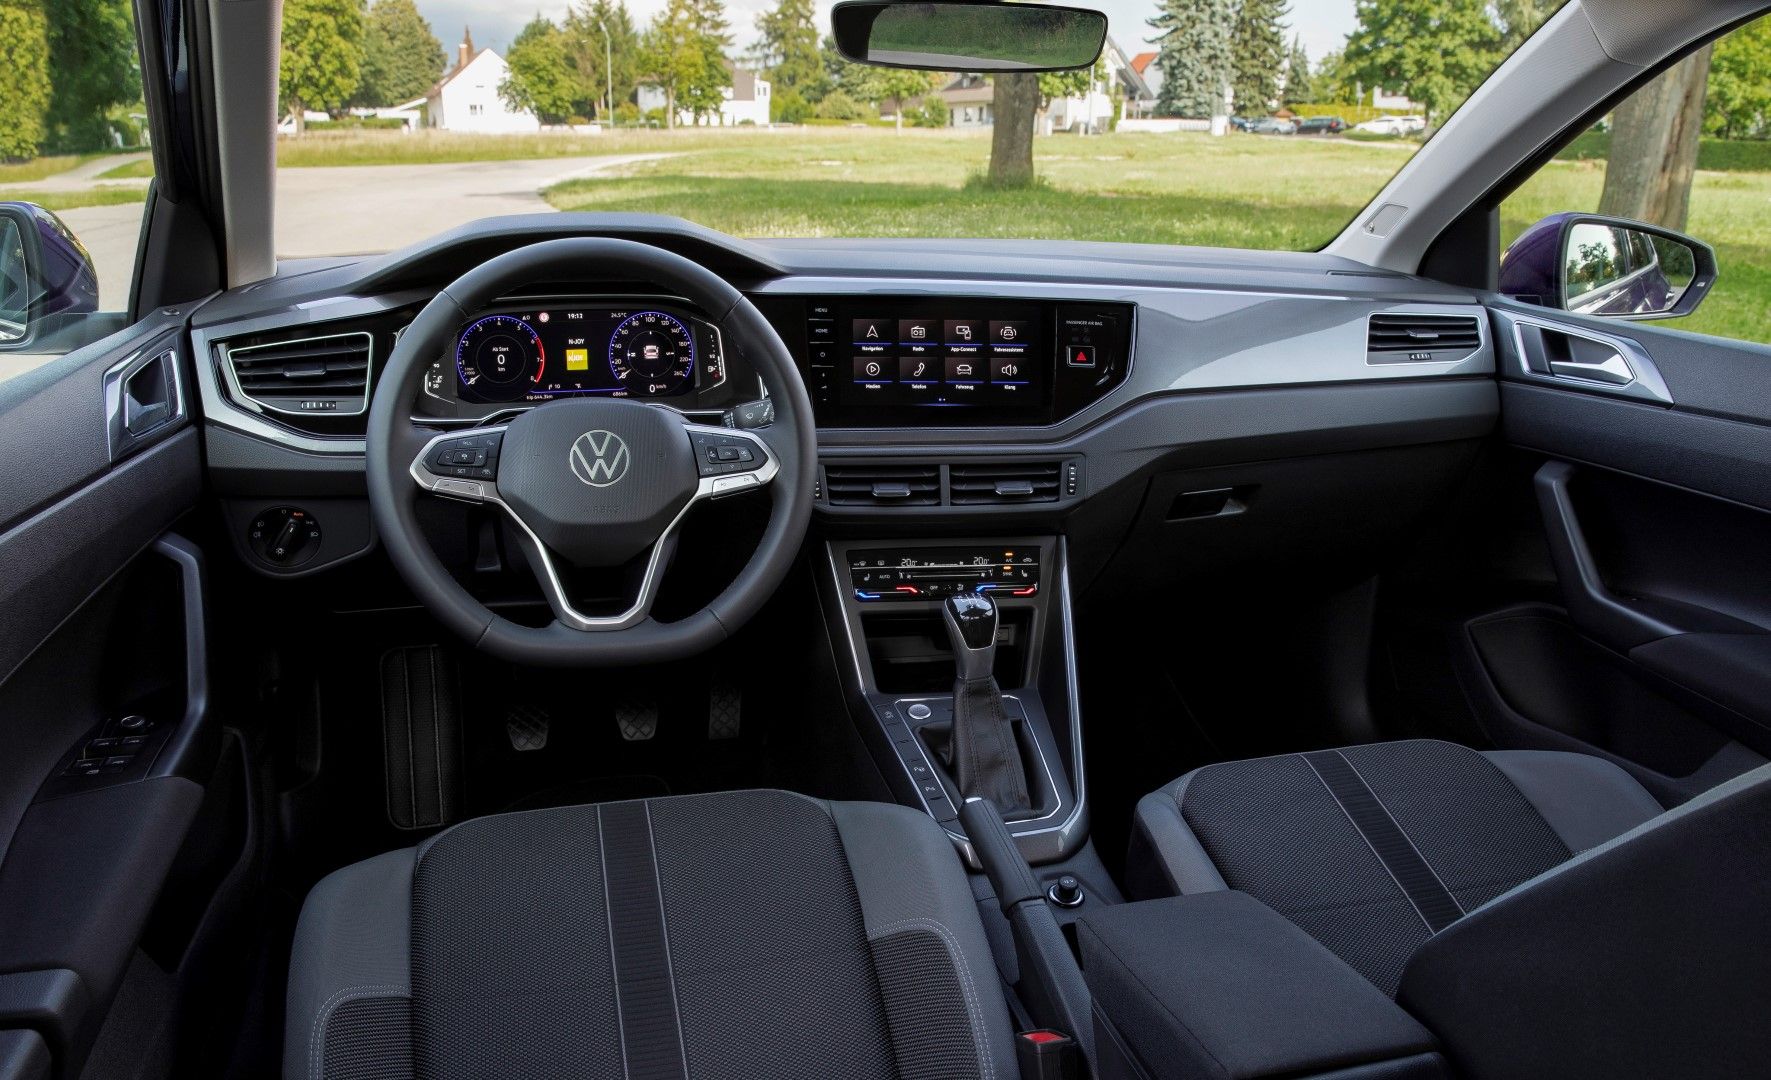 Test Drive || Volkswagen Polo 1.0 TSI 95PS: Η σταθερή αξία